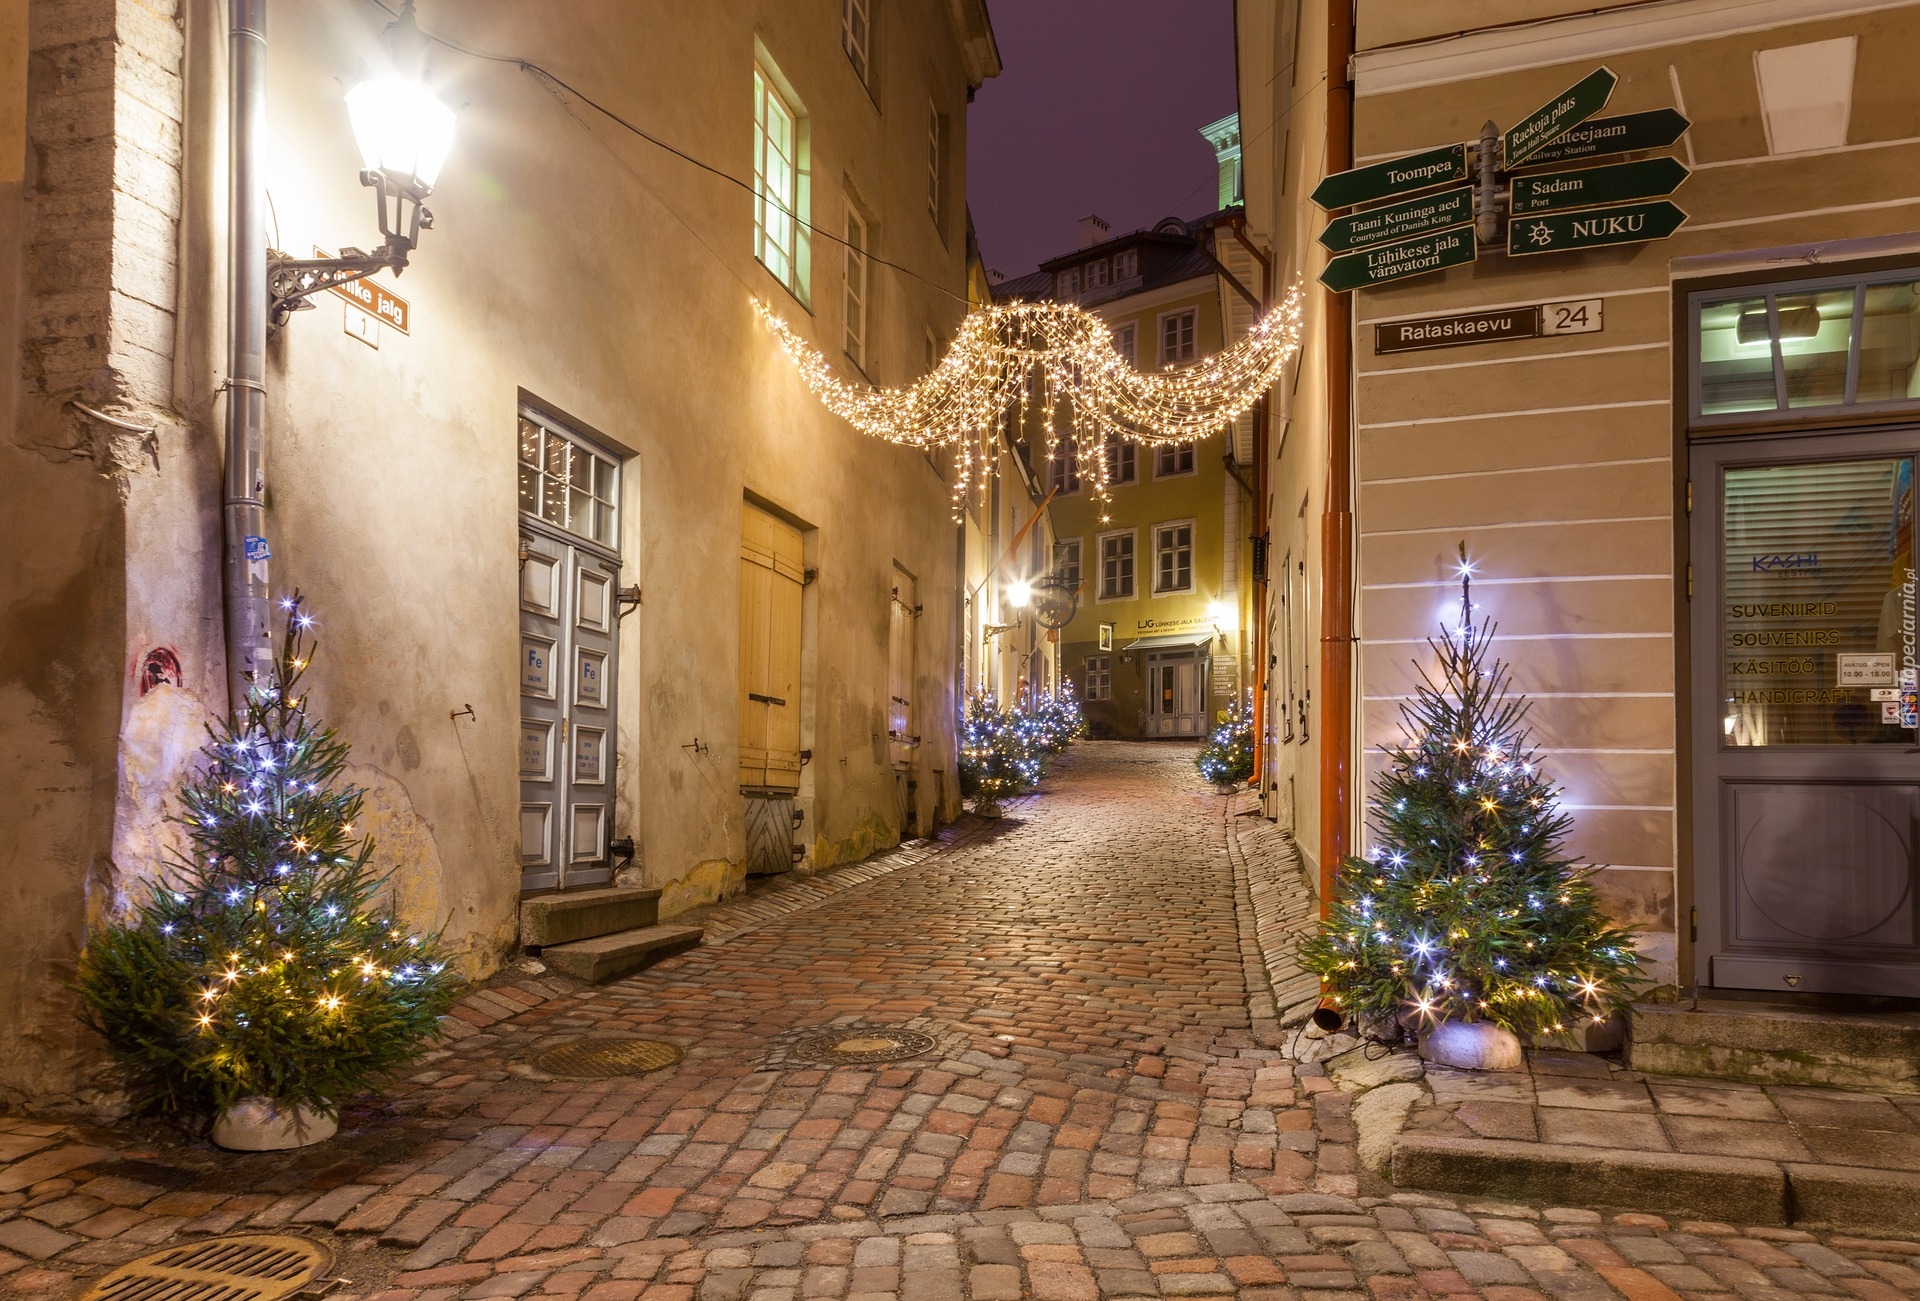 Boże Narodzenie, Udekorowana, Choinka, Światła, Dekoracja, Domy, Ulica, Tallinn, Estonia